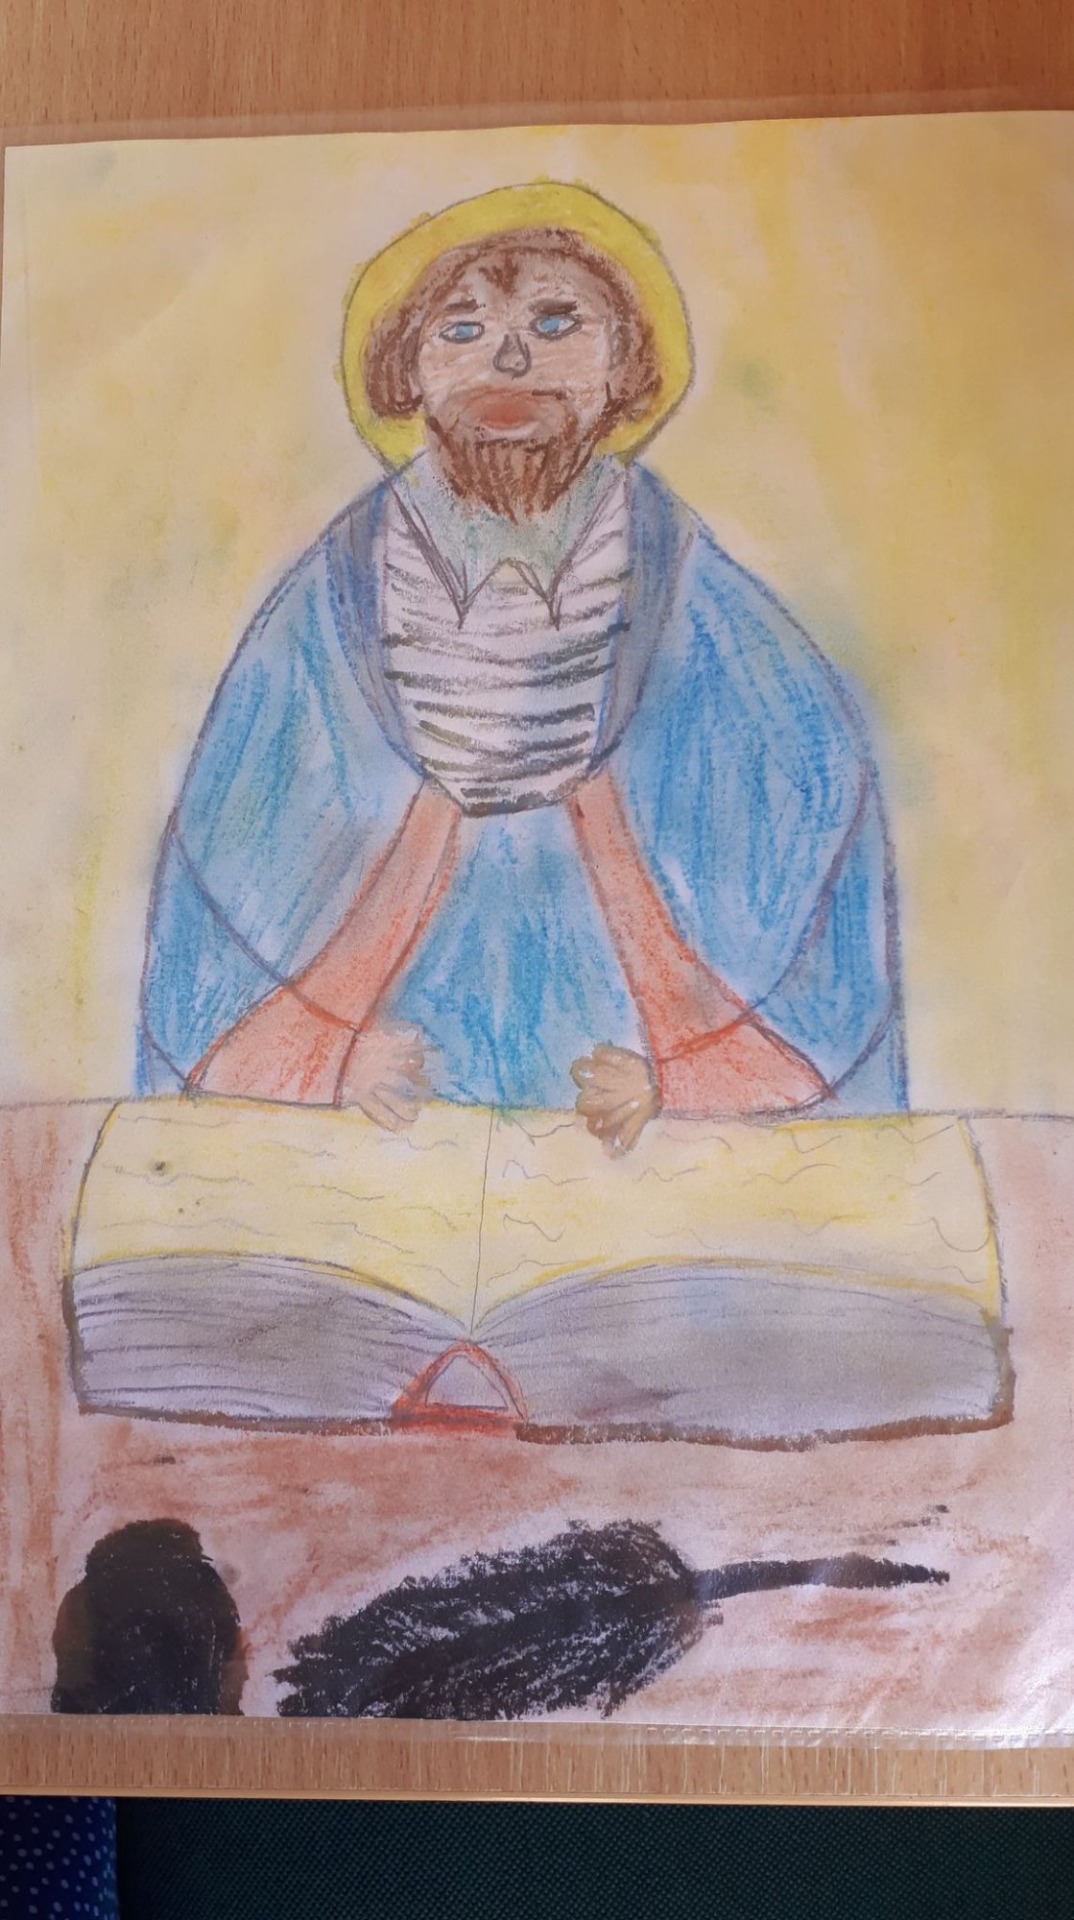 Portret św. Jana Kantego narysowany przez Jakuba